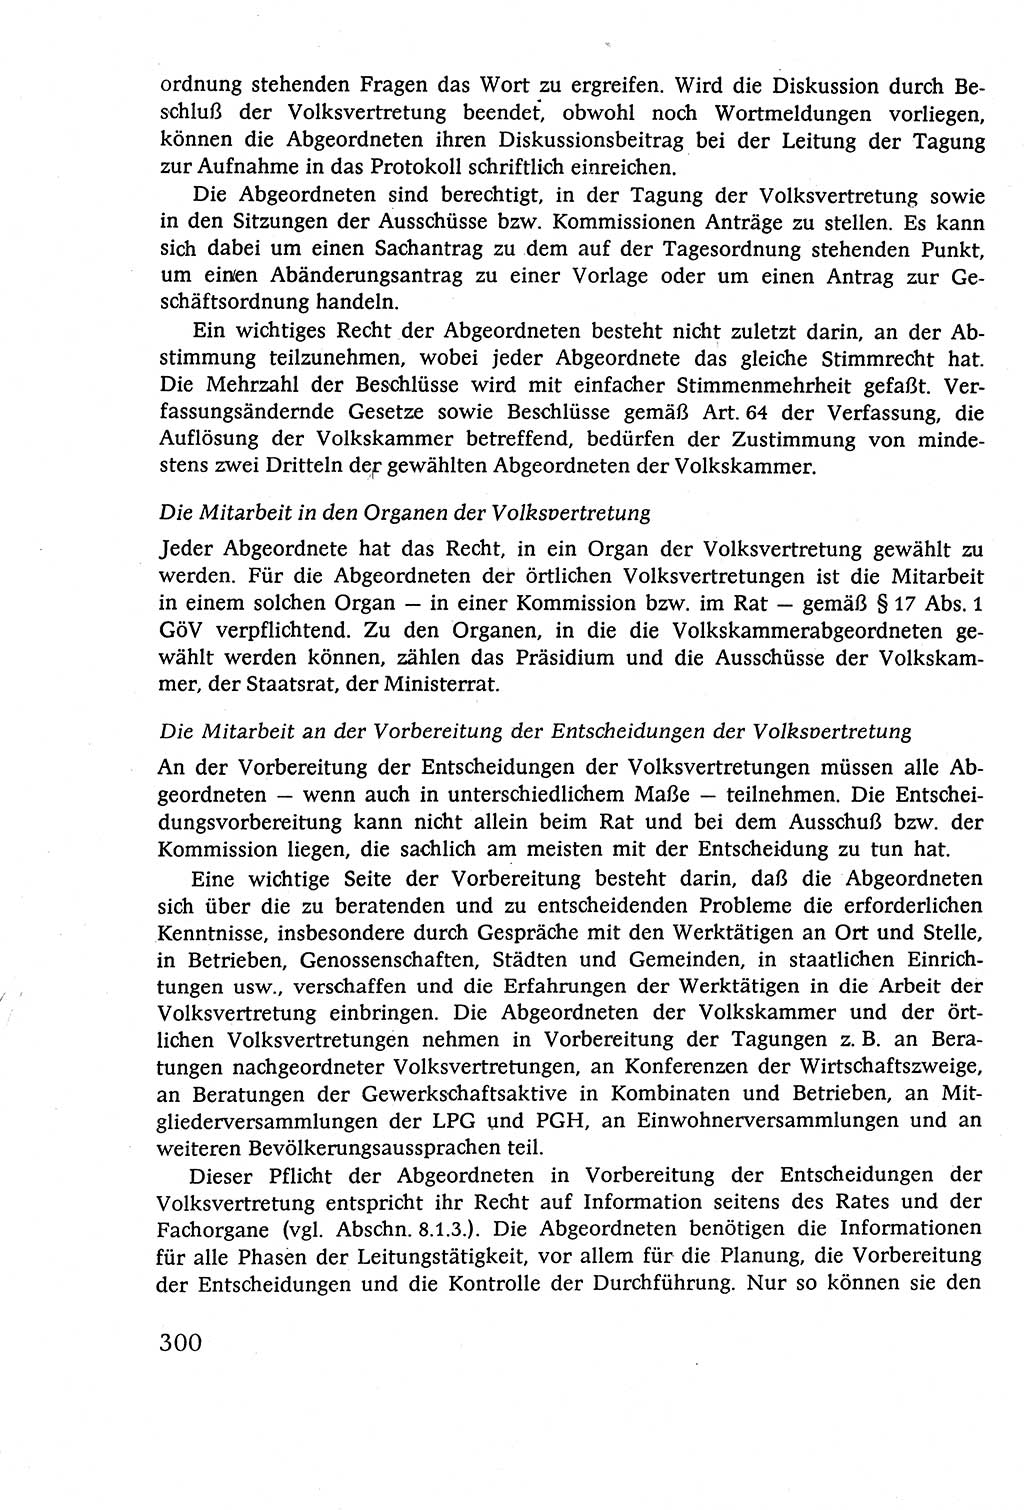 Staatsrecht der DDR (Deutsche Demokratische Republik), Lehrbuch 1977, Seite 300 (St.-R. DDR Lb. 1977, S. 300)